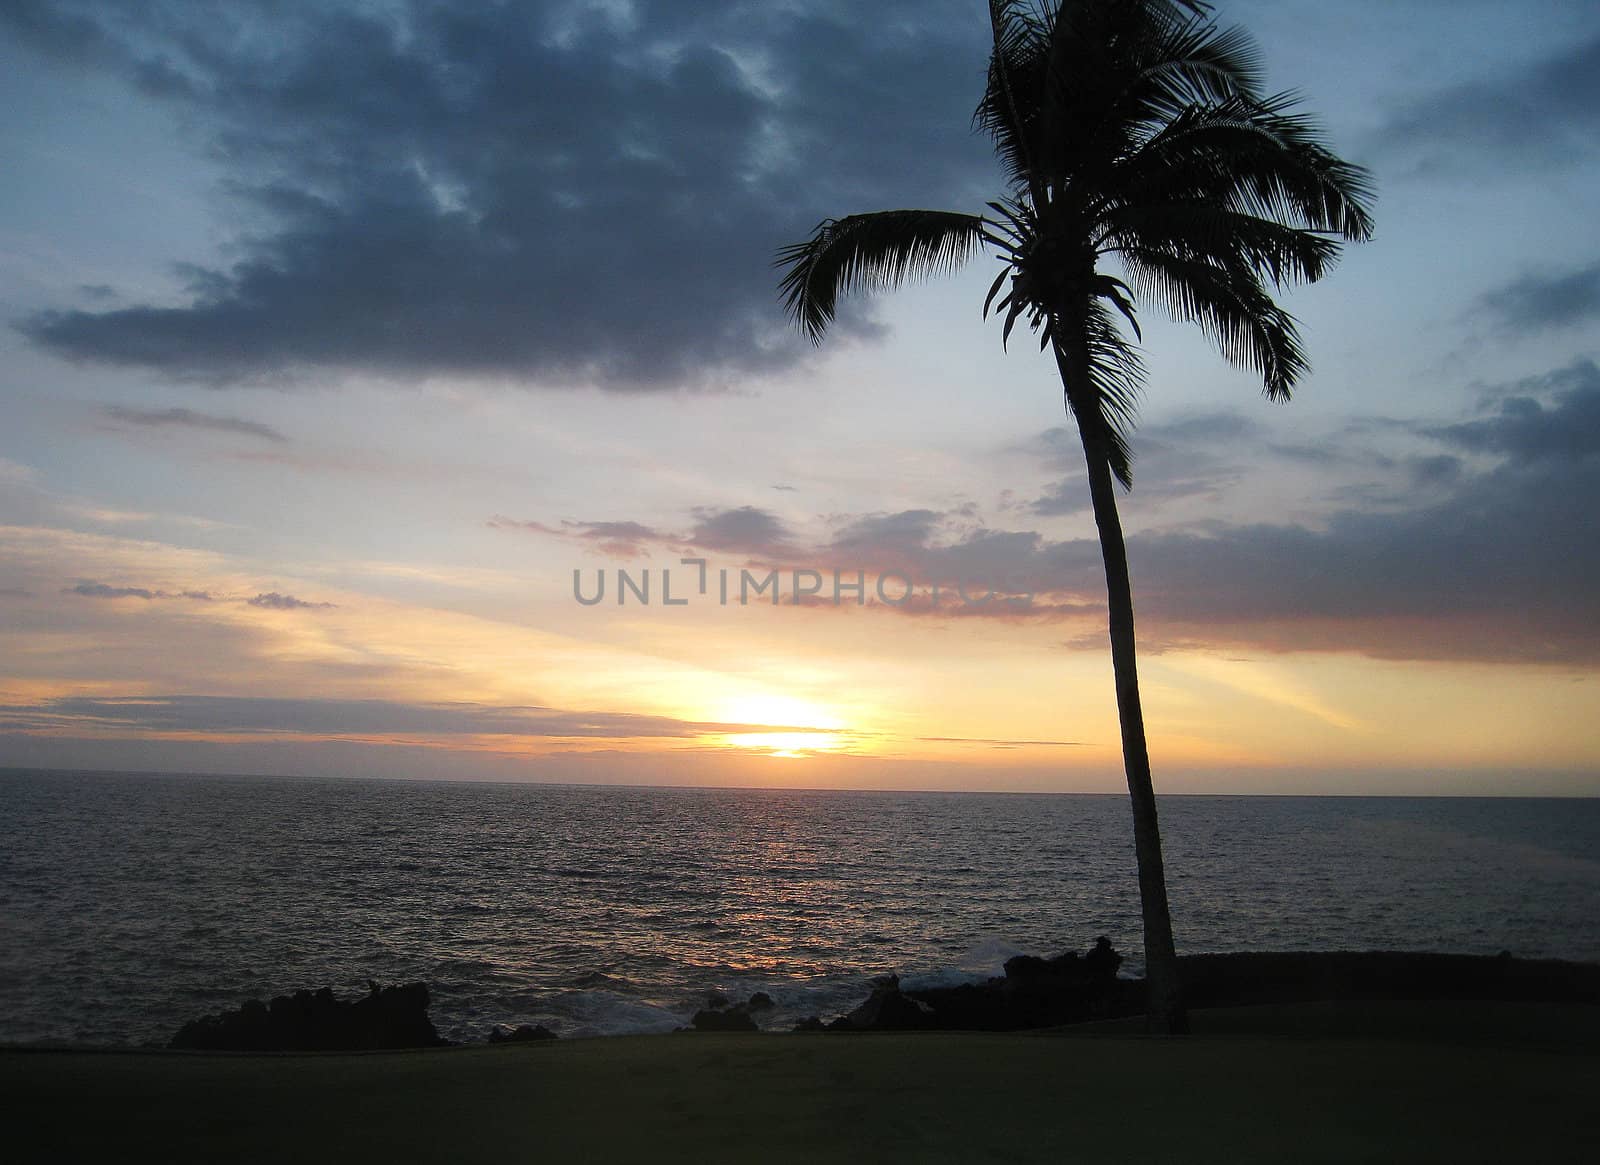 A sunset on Maui